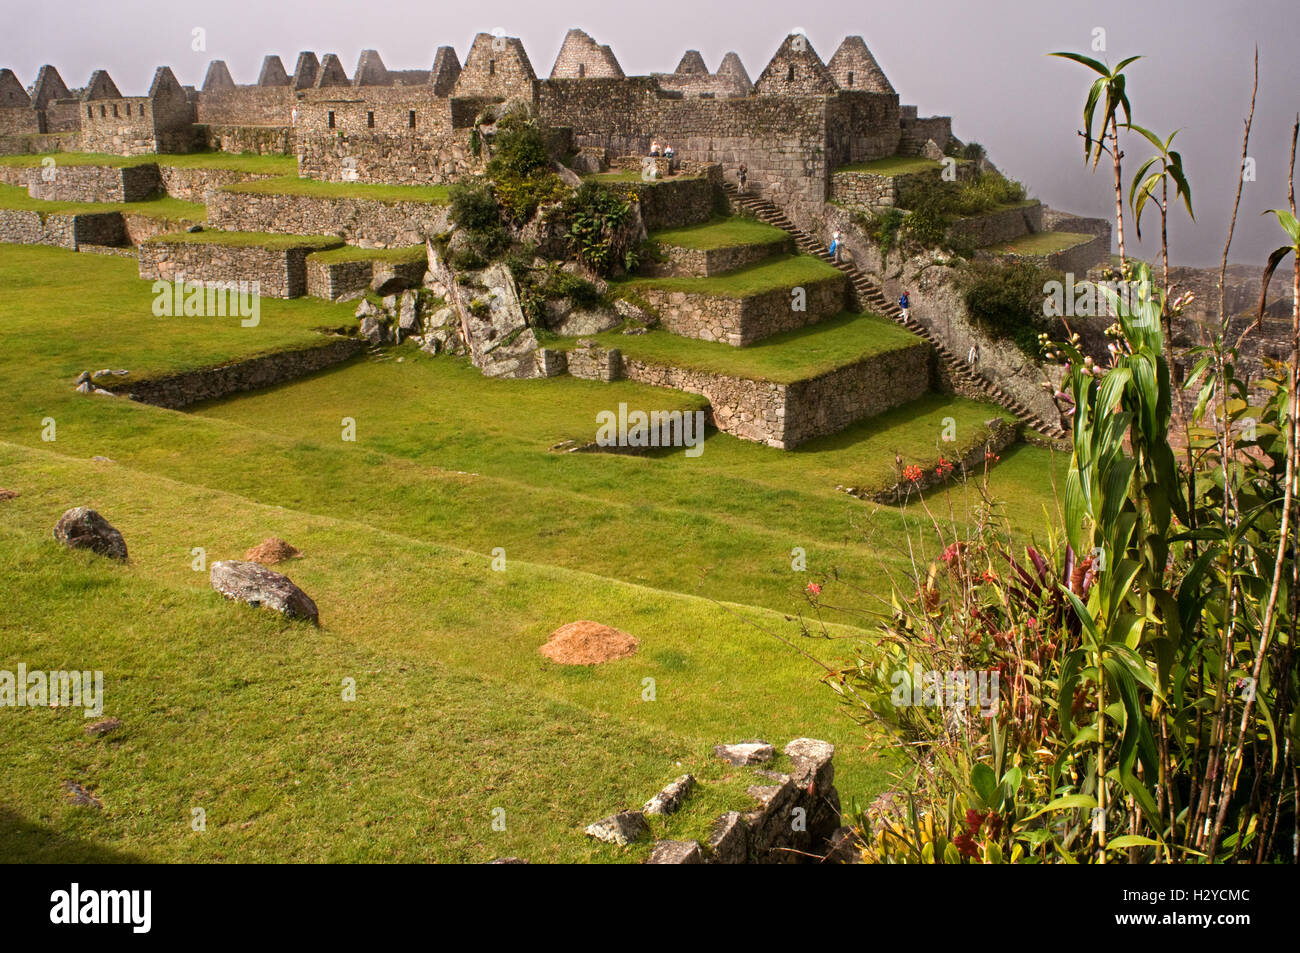 Im Inneren der archäologische Komplex von Machu Picchu. Machu Picchu ist eine Stadt, die hoch in den Anden in modernen Peru. Es Stockfoto